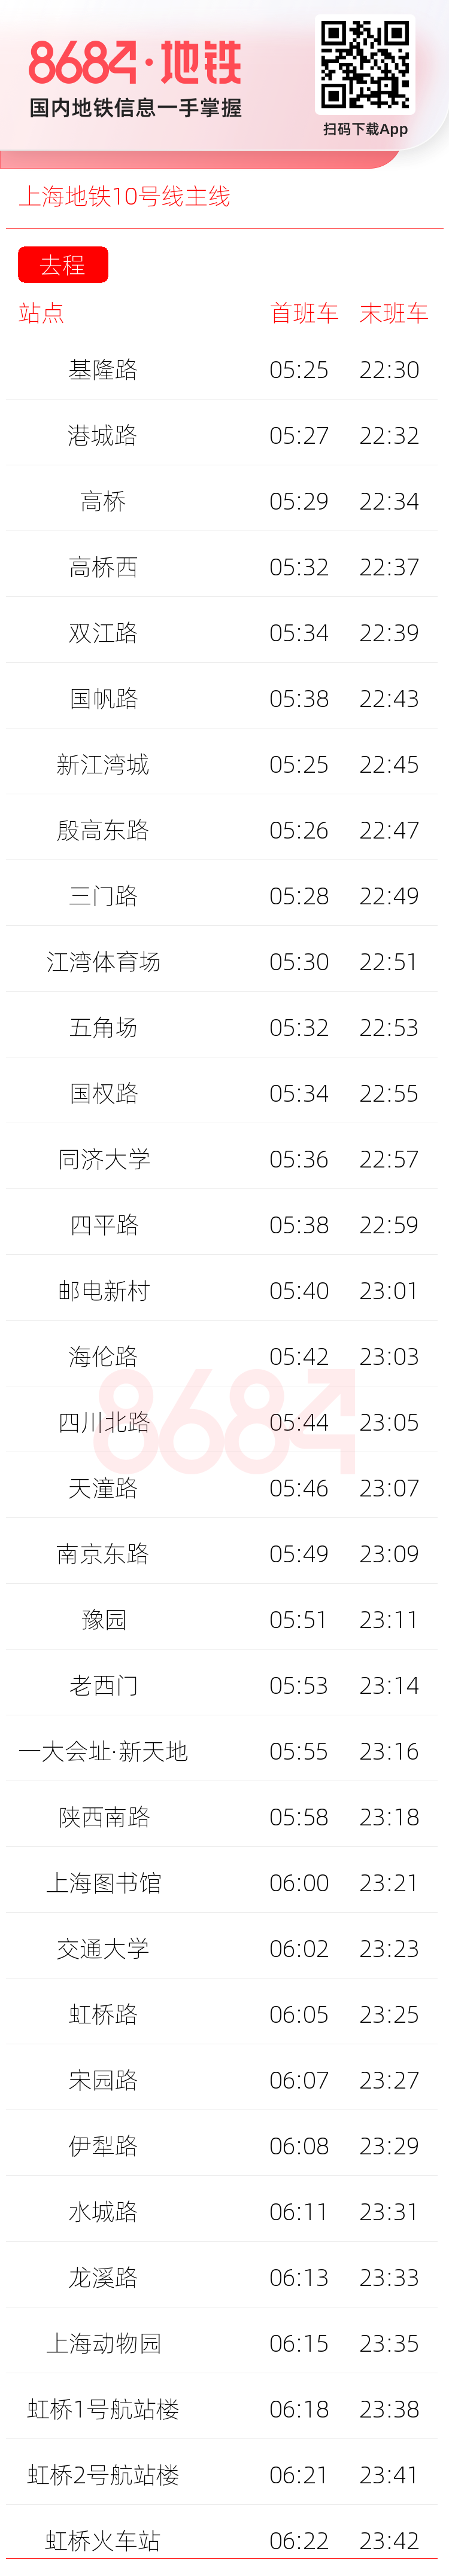 上海地铁10号线主线运营时间表